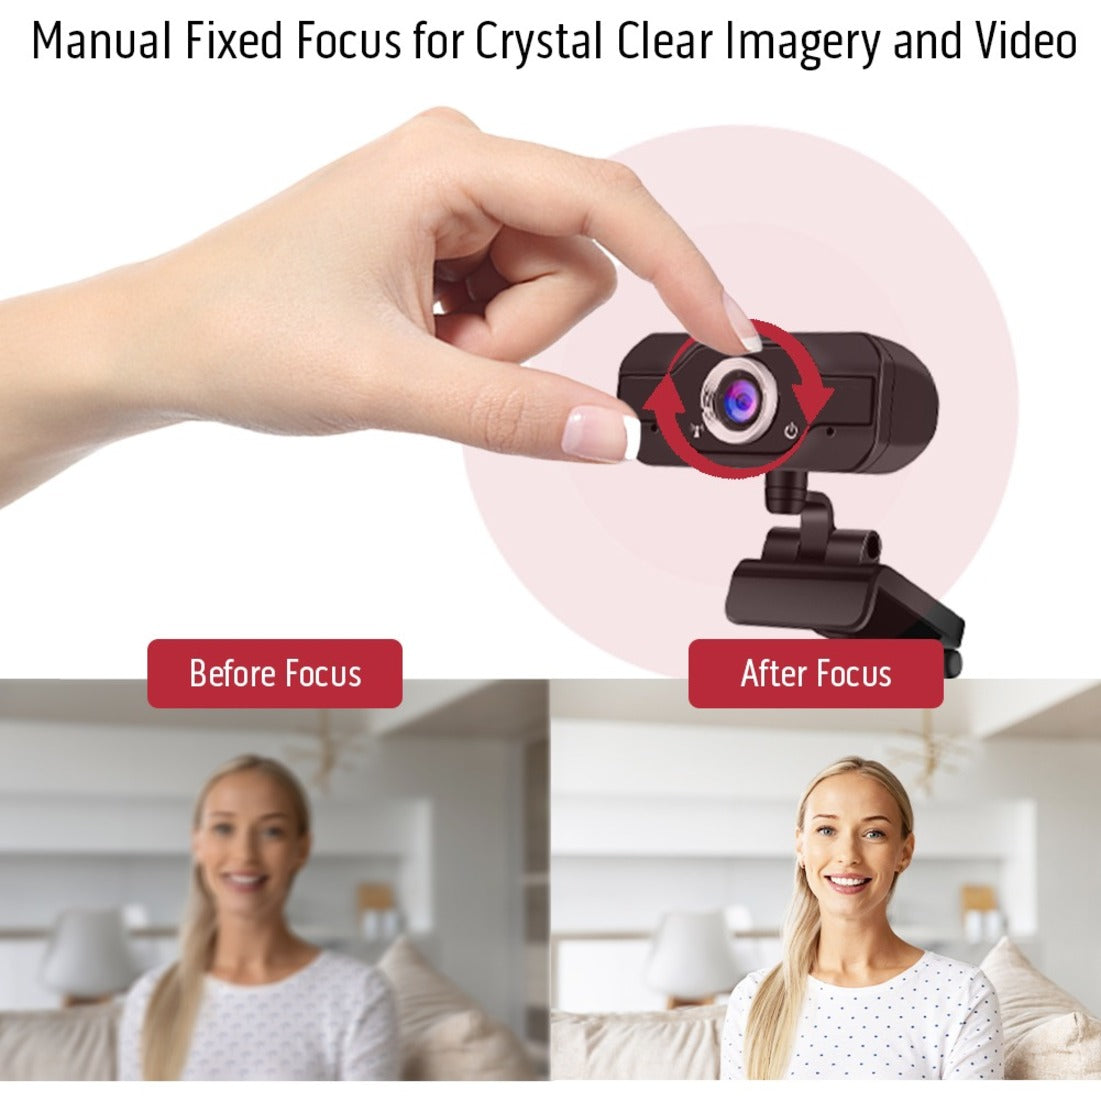 CODi A05024 Aquila HD 1080P Fixed Focus Webcam, 2MP CMOS Sensor, 30fps, USB 2.0, Built-in Microphone